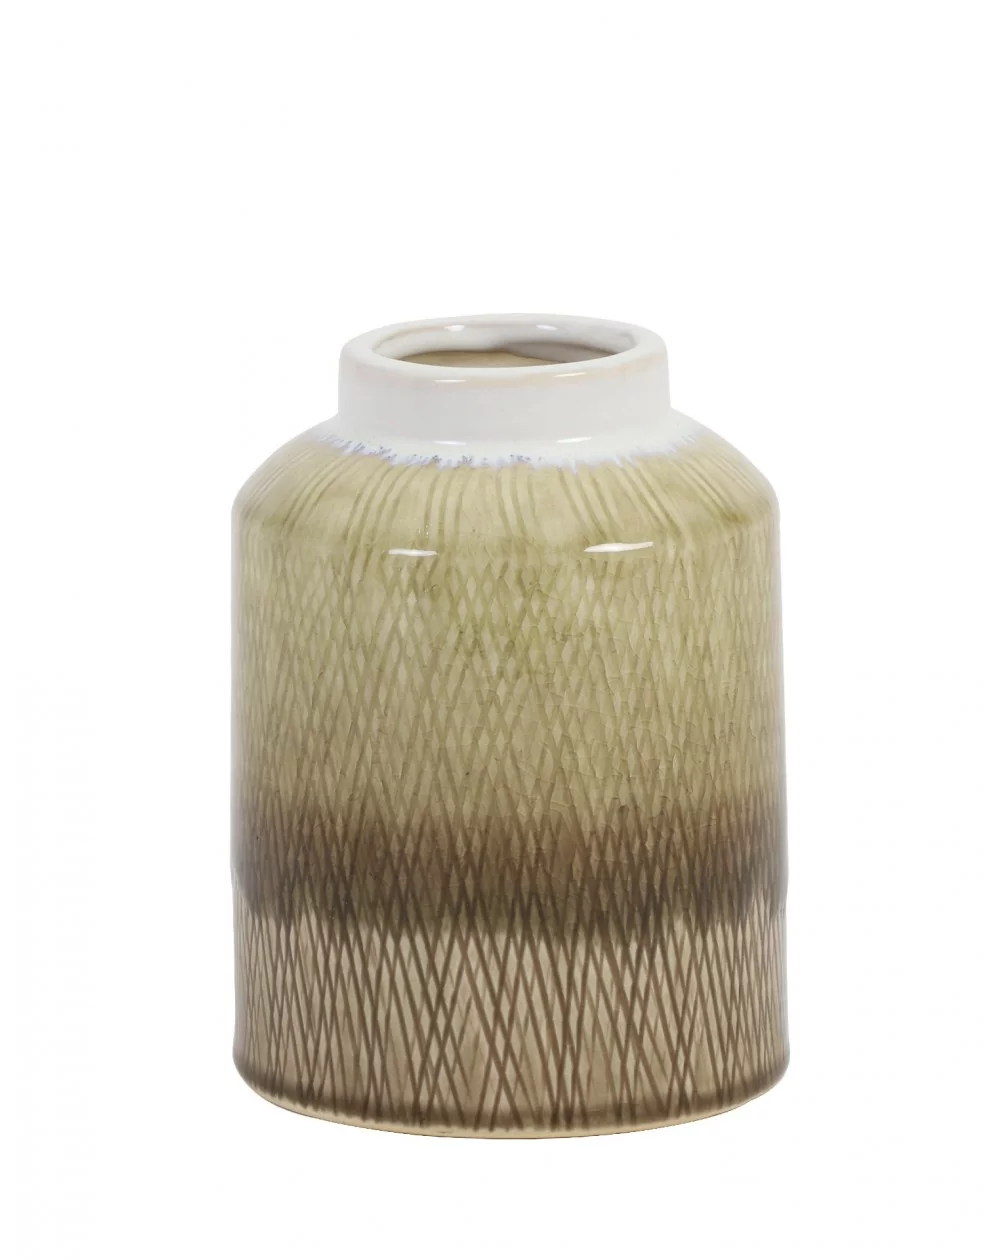 Dekoratívna keramická váza ARISTA, sand,  (S)